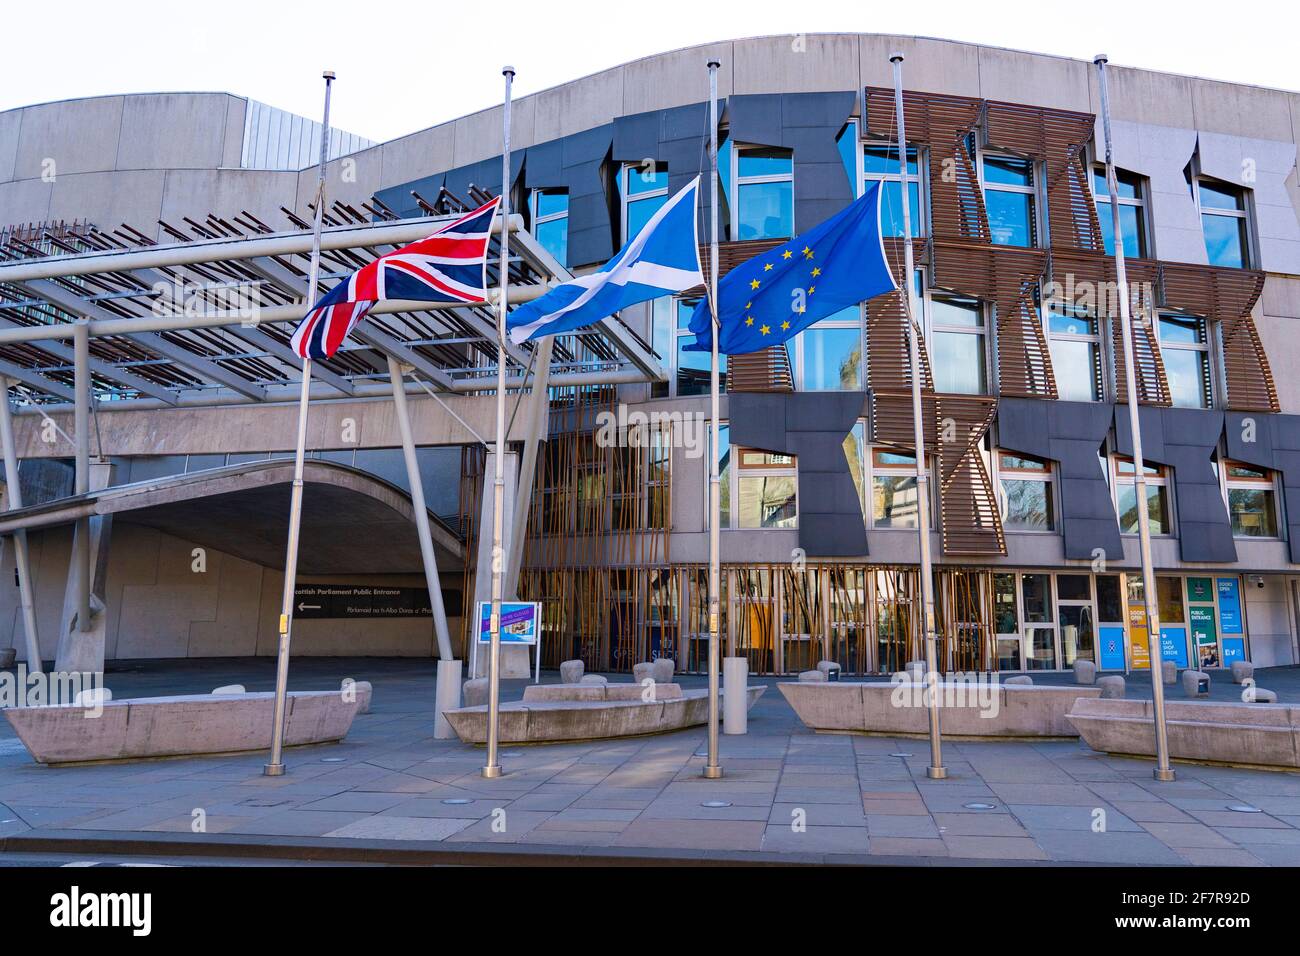 Edimburgo, Escocia, Reino Unido. 9 de abril de 2021. Las banderas vuelan hoy a media asta en Edimburgo, a la noticia de la muerte del príncipe Felipe el Duque de Edimburgo. Pic; Las banderas vuelan a medio mástil fuera del edificio del parlamento escocés en Holyrood. Iain Masterton/Alamy Live News Foto de stock